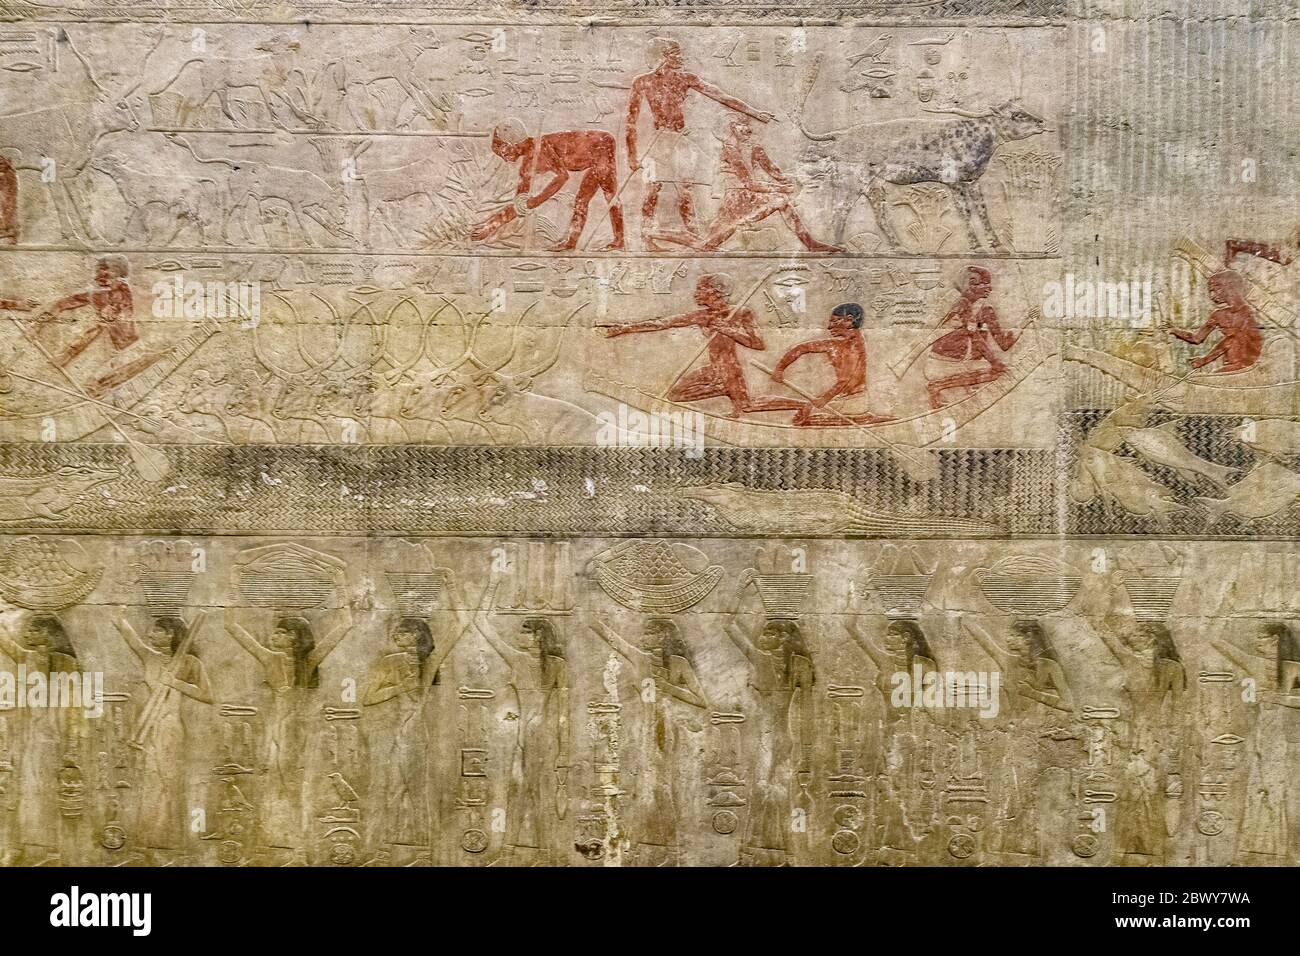 Le mur nord de la chapelle de la mastaba de Ty est dédié à la parade des domaines et à la traversée d'une ford par un troupeau de neuf bovins Banque D'Images